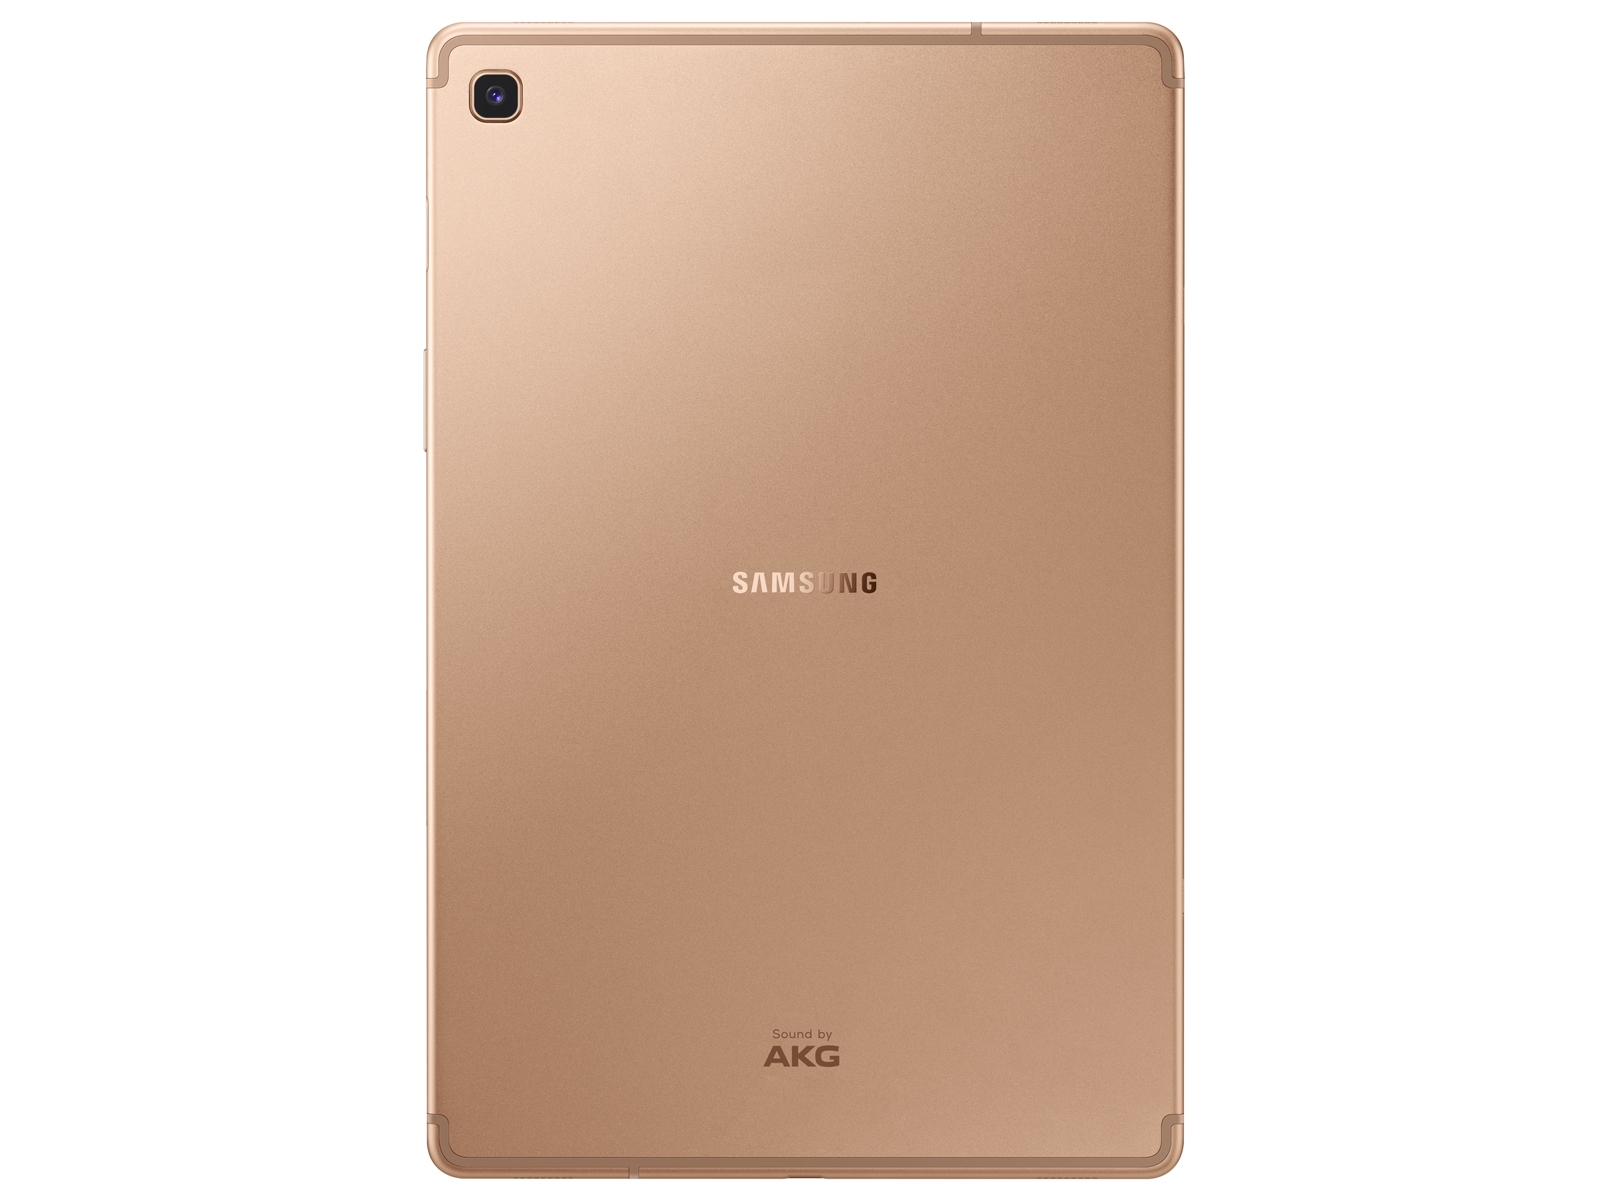 Galaxy Tab 10.5, 64GB, Gold (Wi-Fi) SM-T720NZDAXAR | US